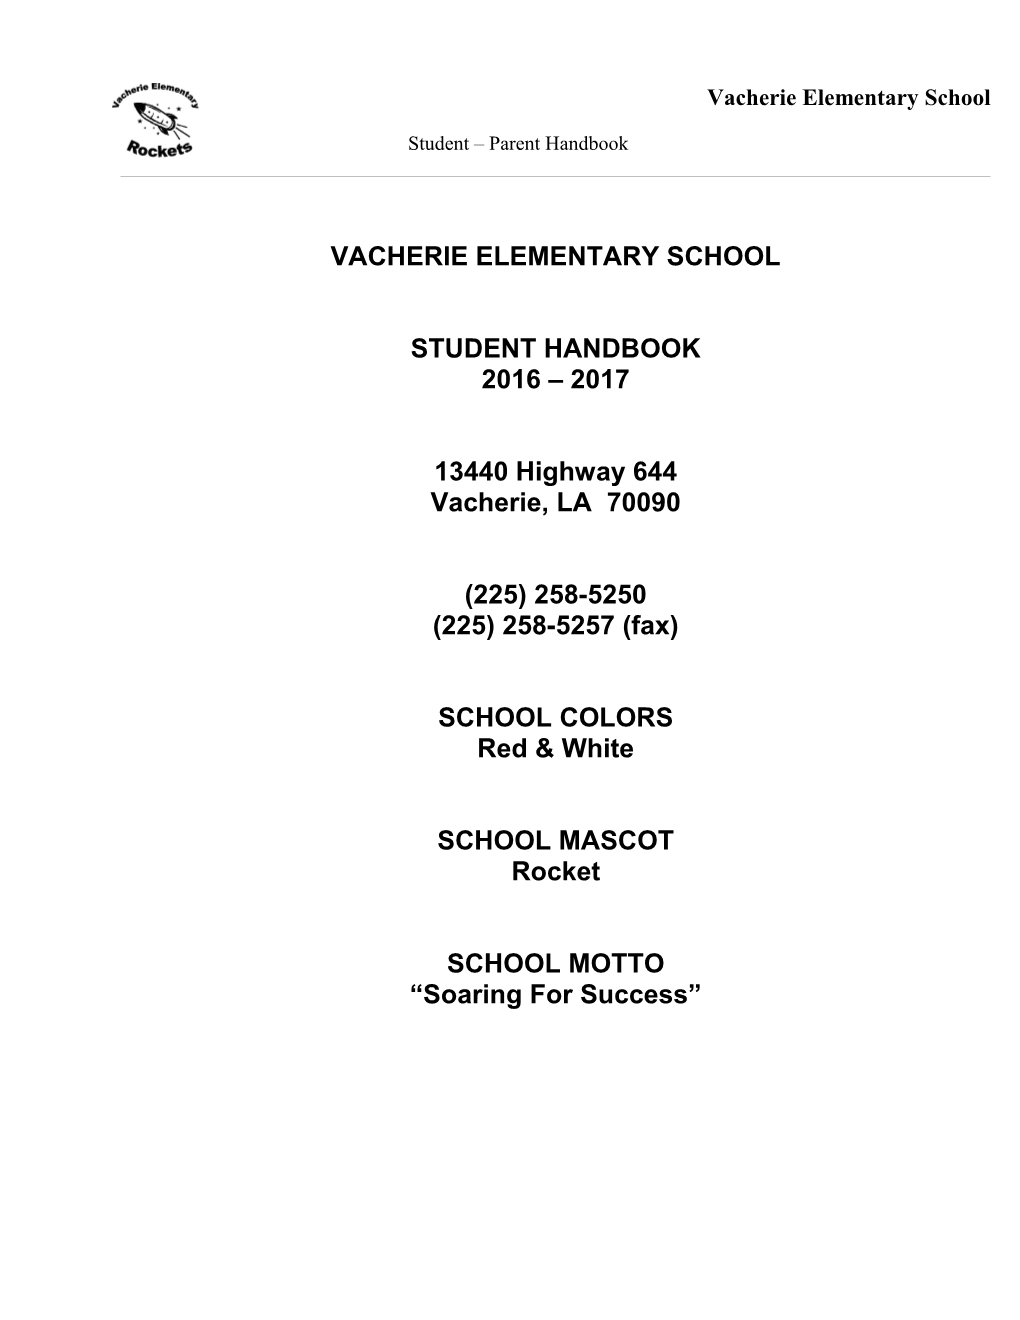 Vacherie Primary School Student-Parent Handbook